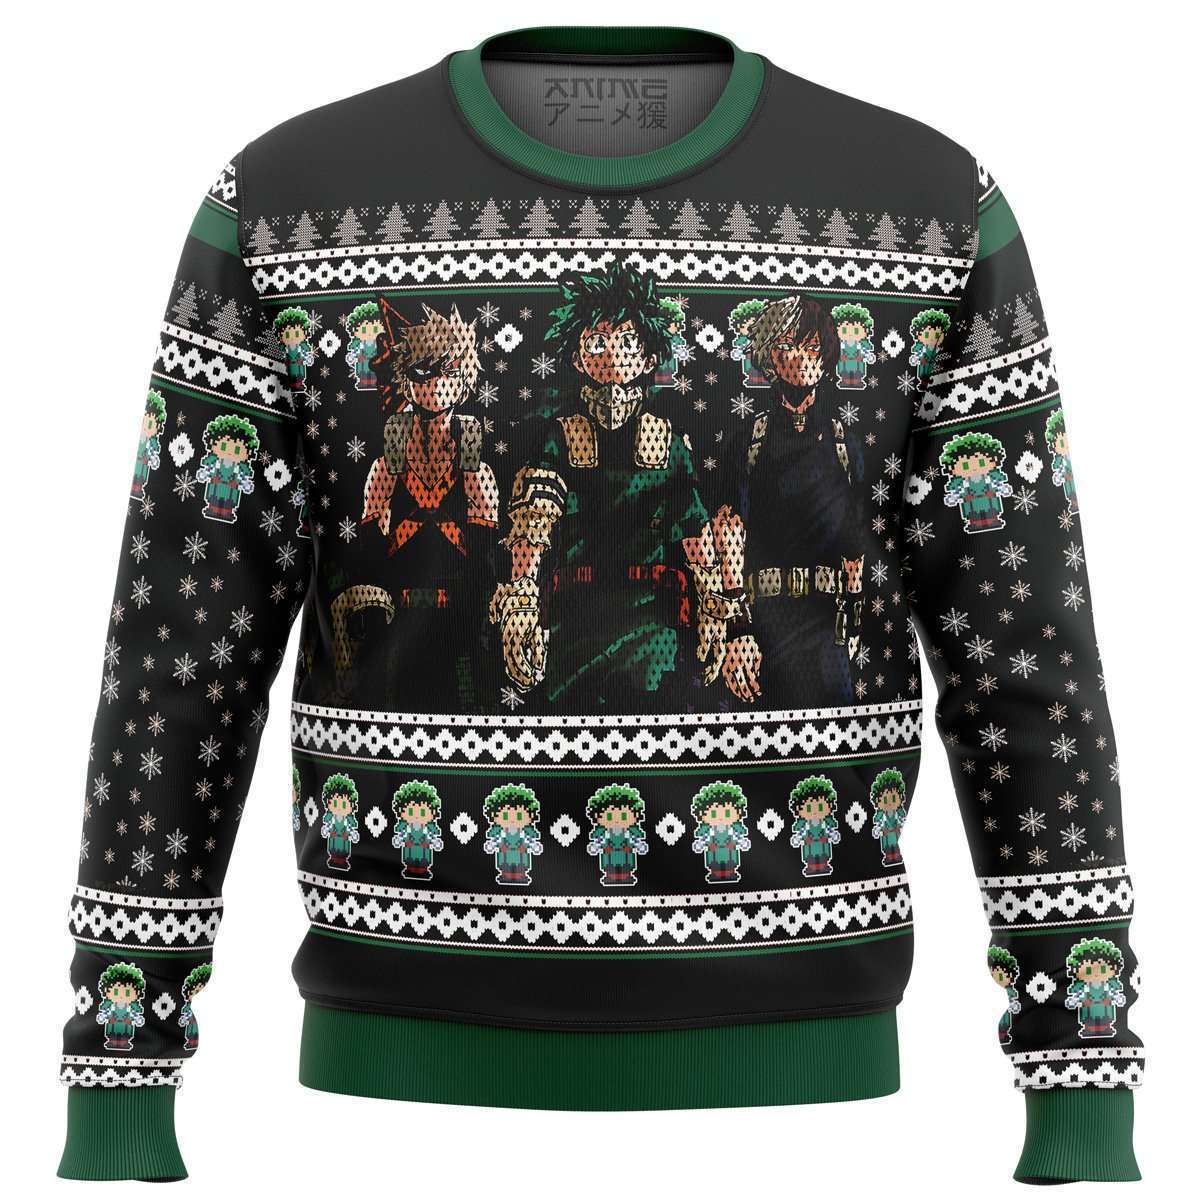 My Hero Academia top 3 Ugly Christmas Sweater